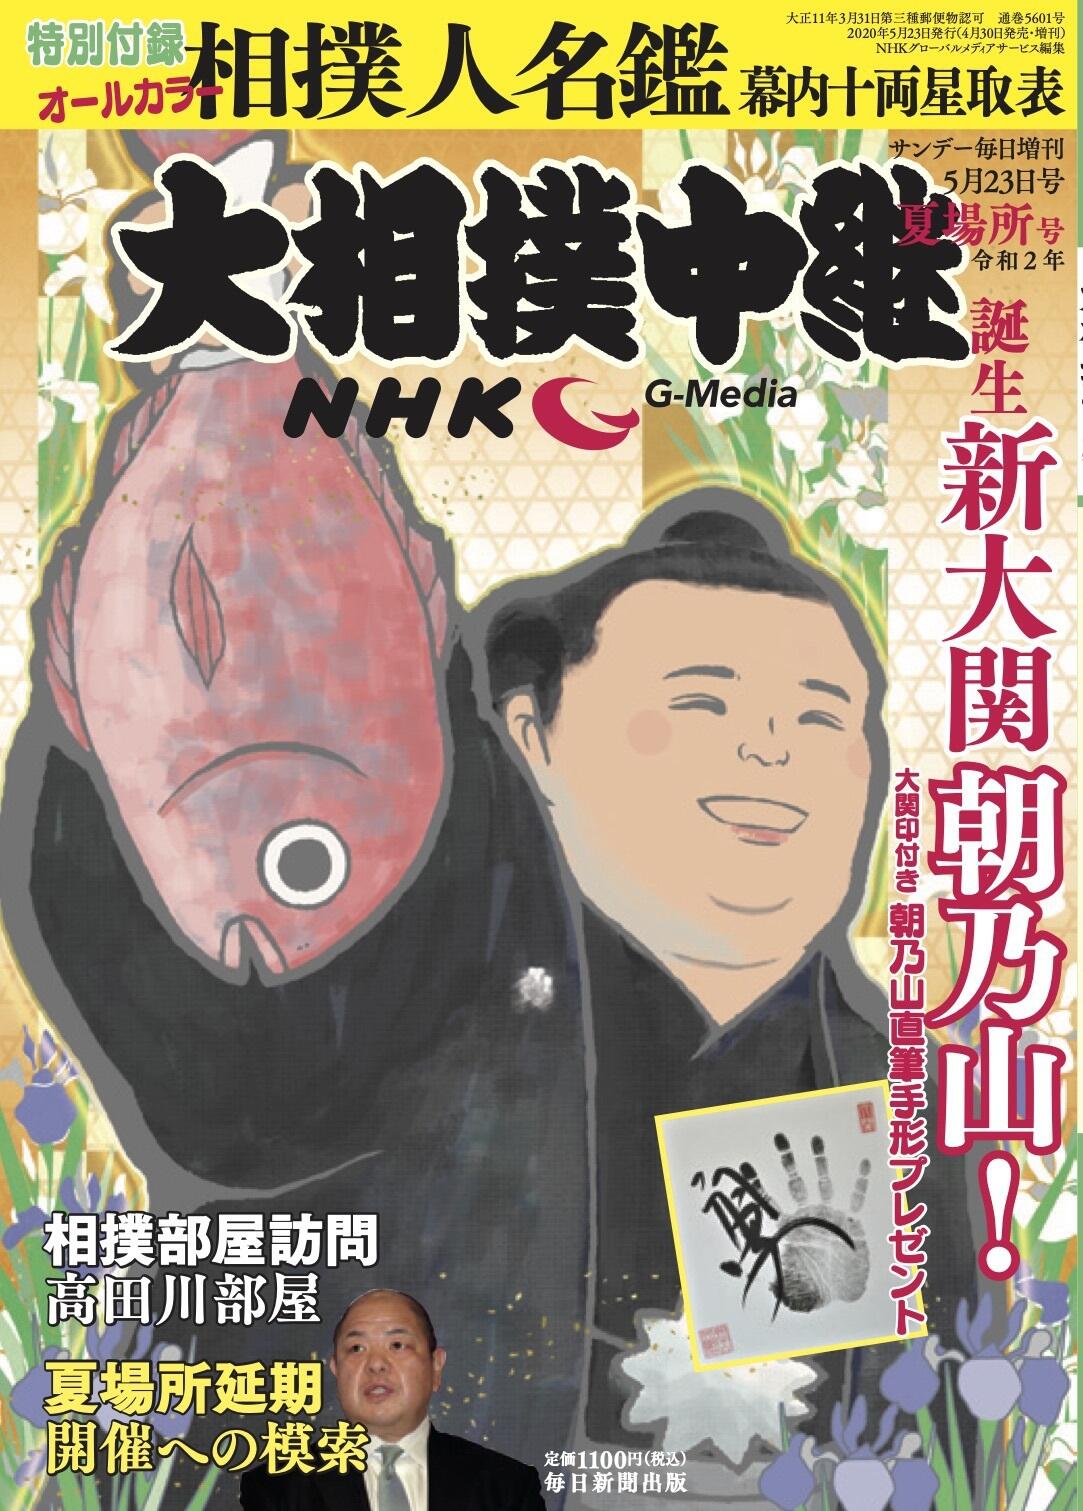 NHK G-Media 大相撲中継 令和2年 夏場所号 | 毎日新聞出版